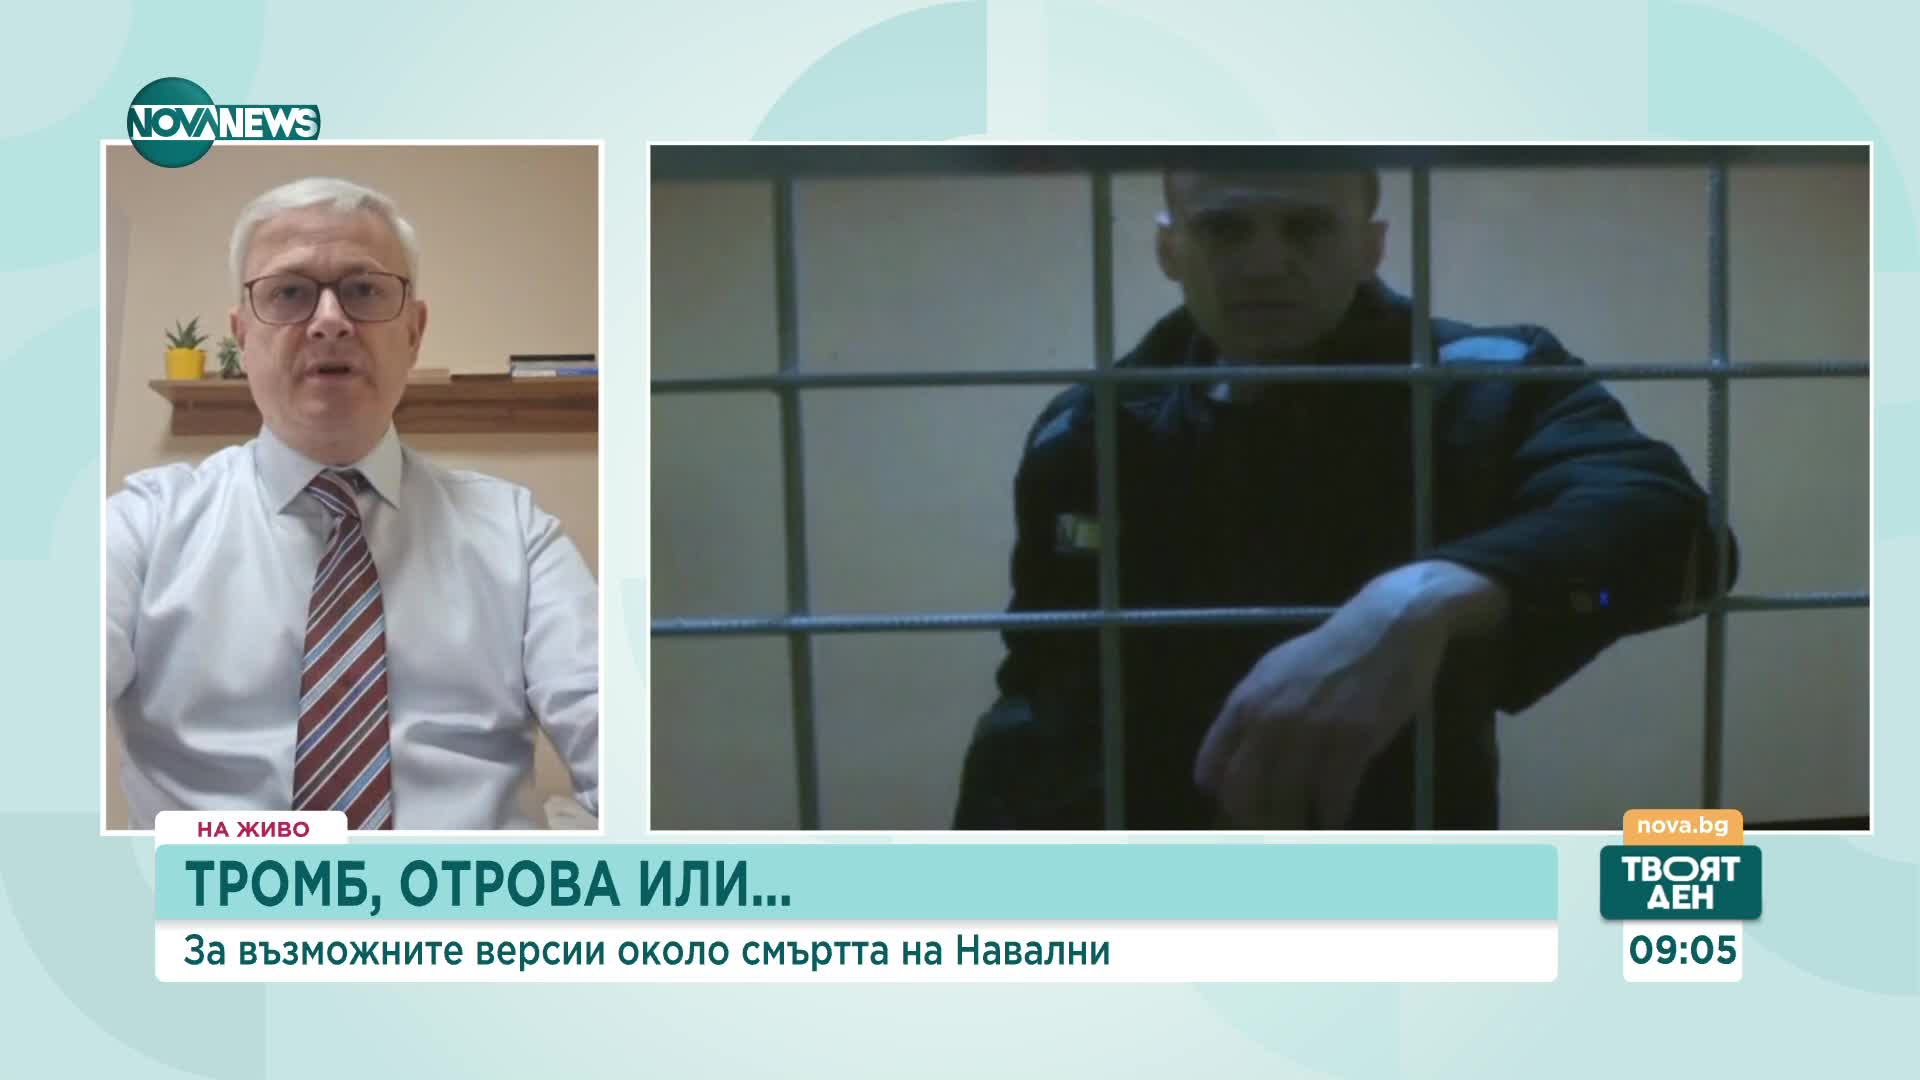 Милко Бернер: Ако има воля, може да се открие дали Навални е отровен с новичок